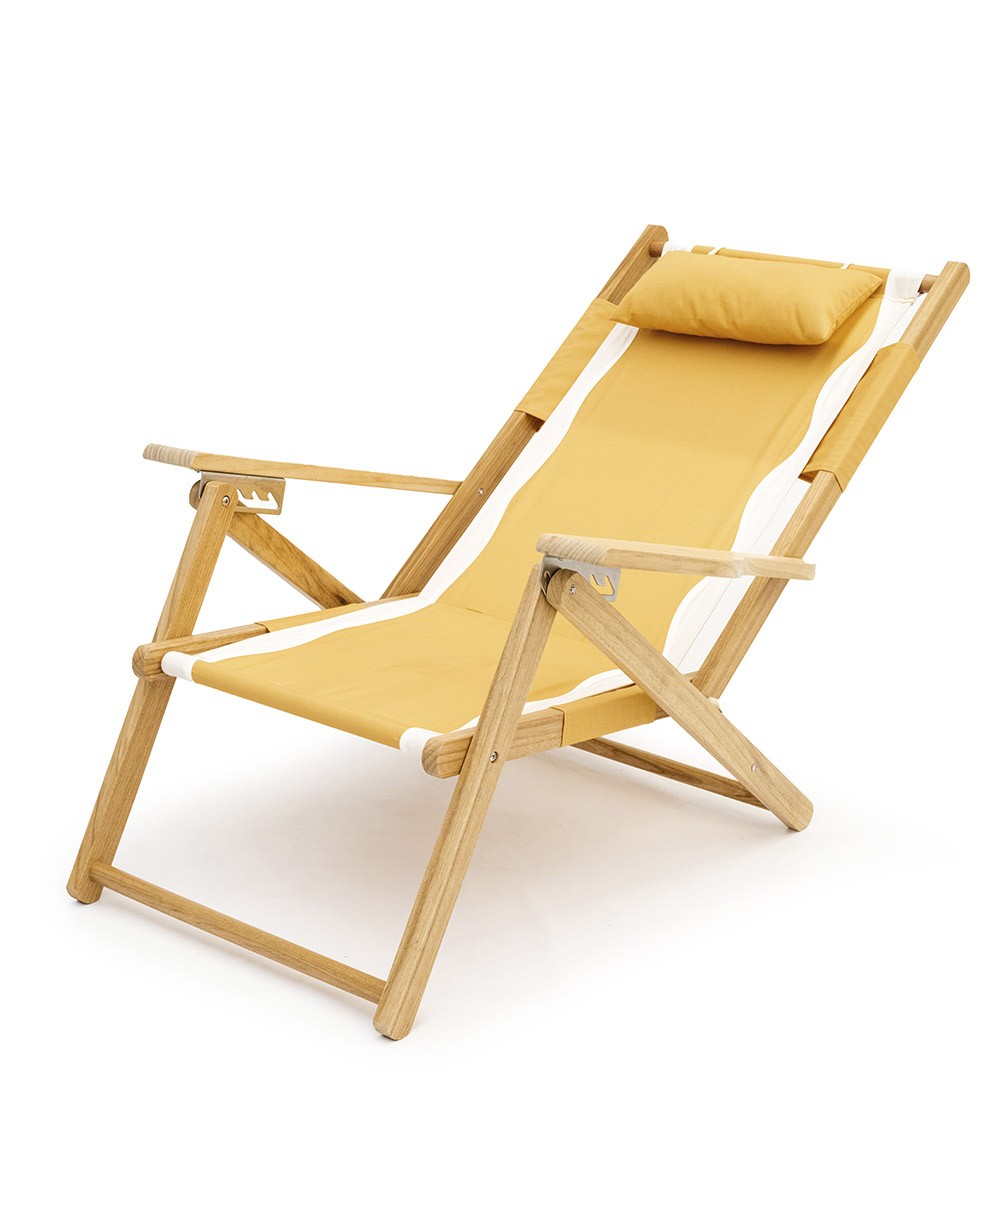 Hier abgebildet ist der The Tommy Chair in Rivie Mimosa von Business & Pleasure Co. – im RAUM concept store